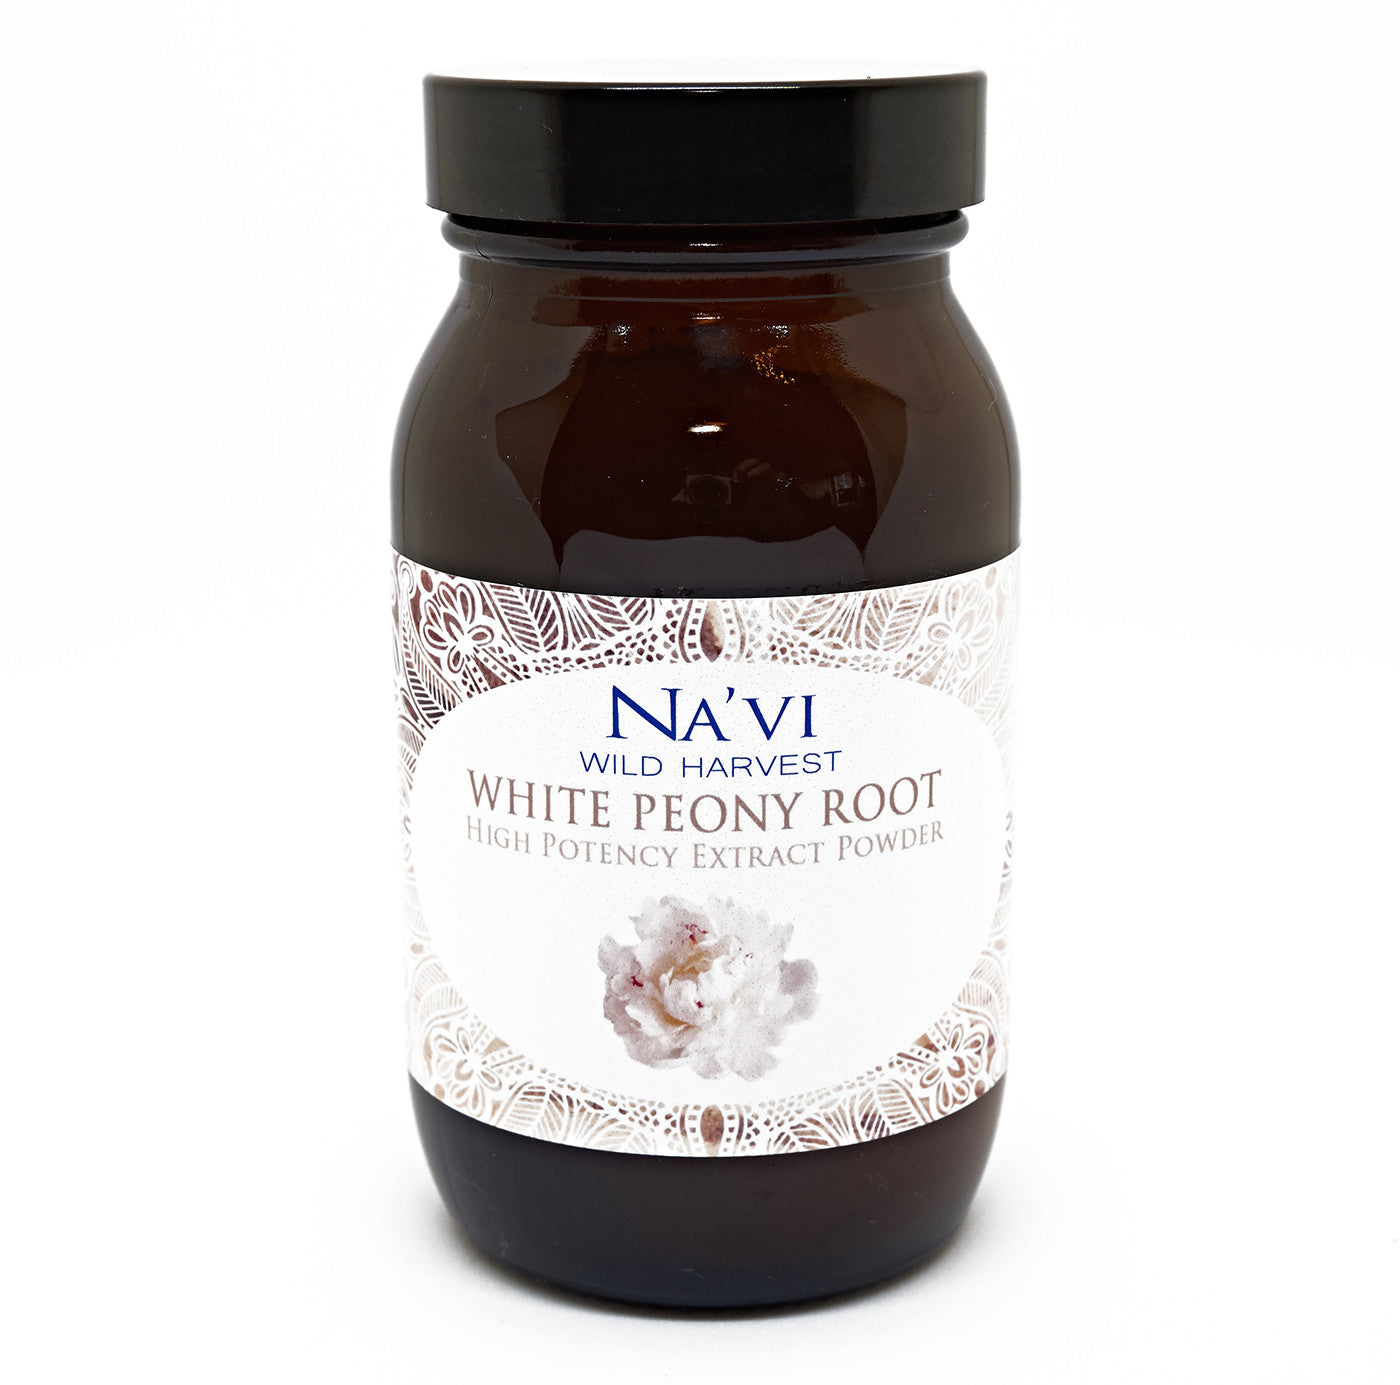 90 gram jar of White Peony Root Extract Powder